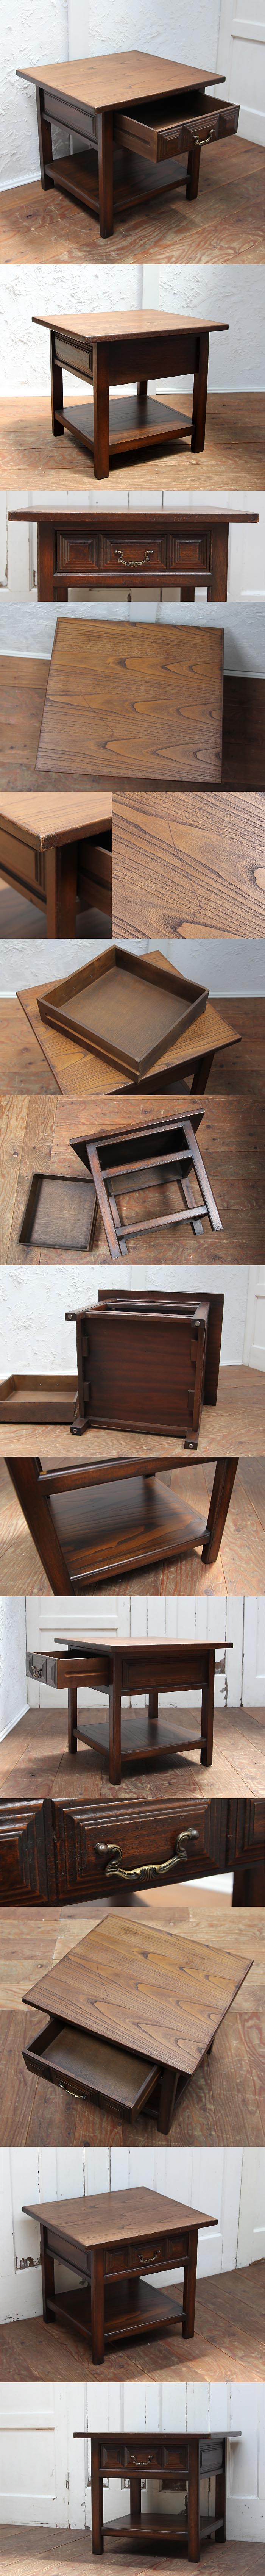 イギリス アンティーク調 引き出し付きローテーブル 木製 コーヒーテーブル 家具「ドロワー付」P-449